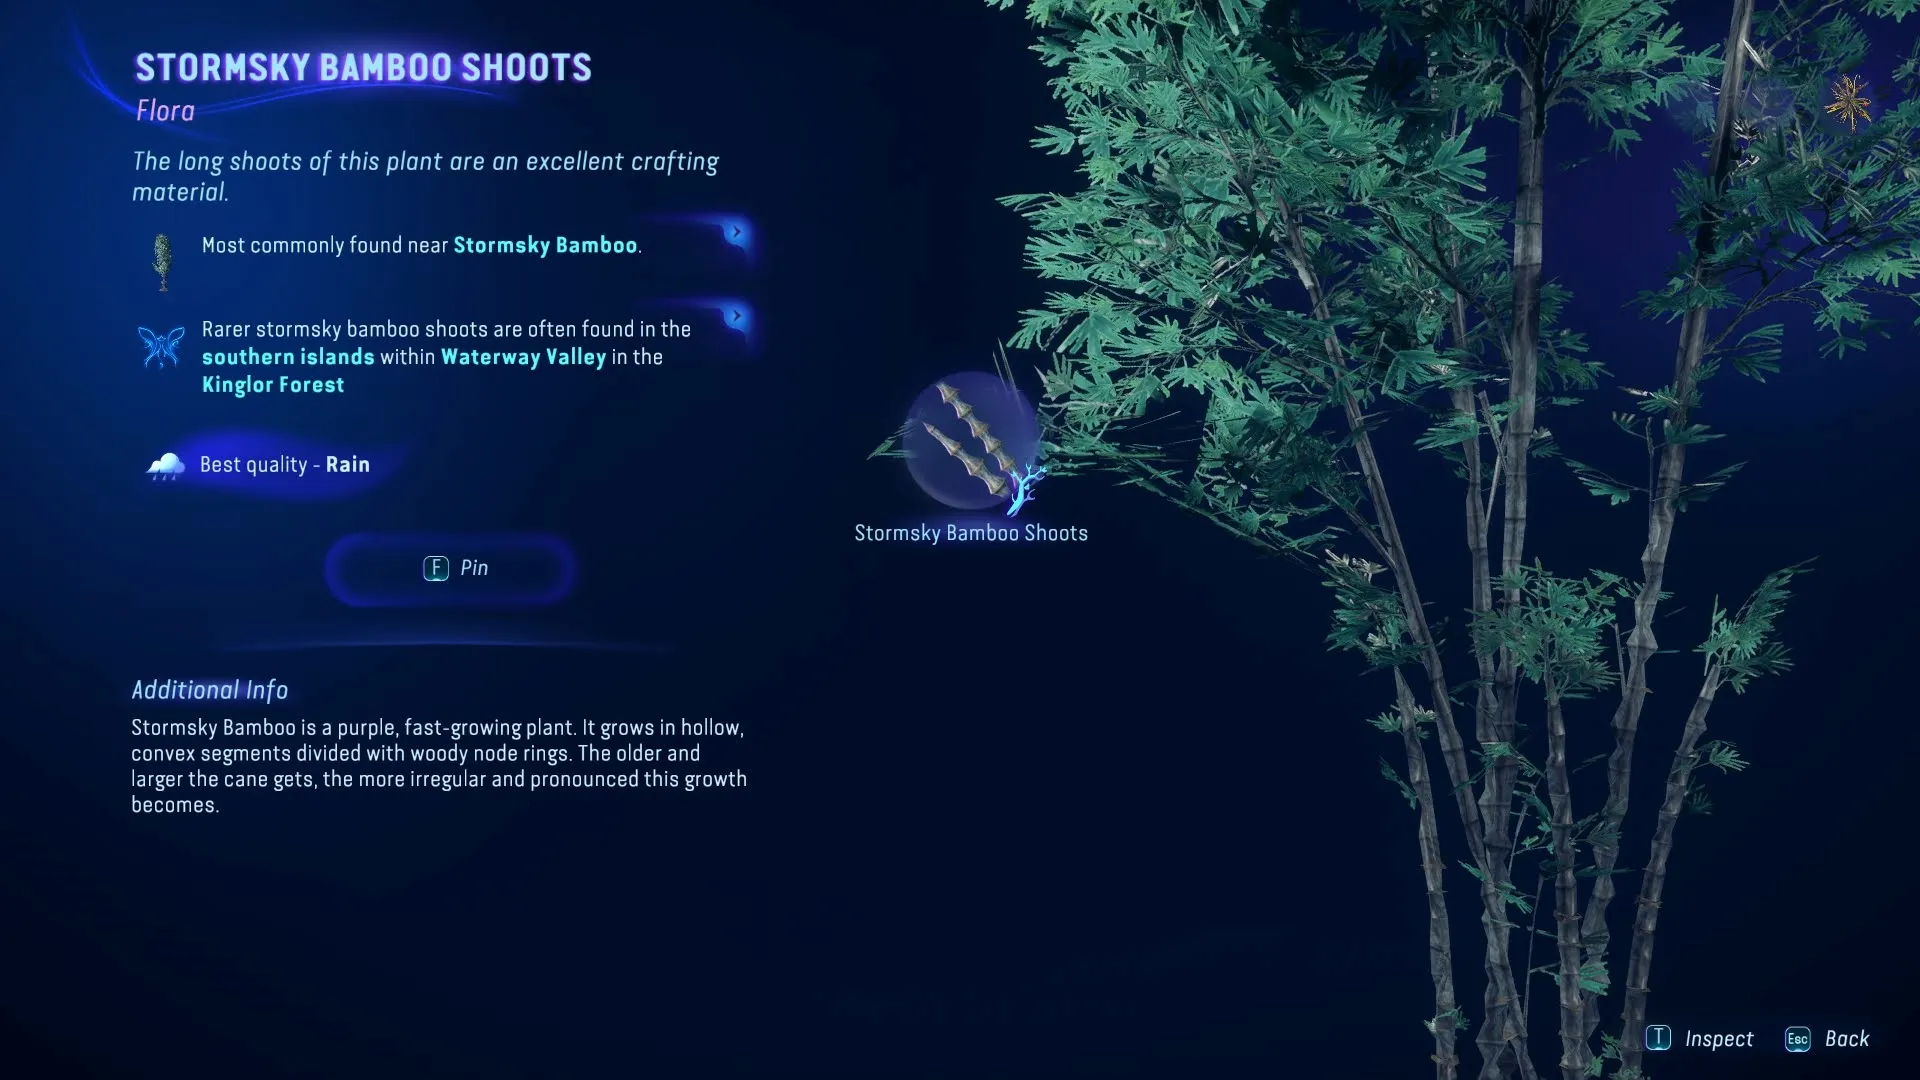 Aperçu des pousses de bambou Stormsky dans le guide du chasseur d'Avatar Frontiers of Pandora